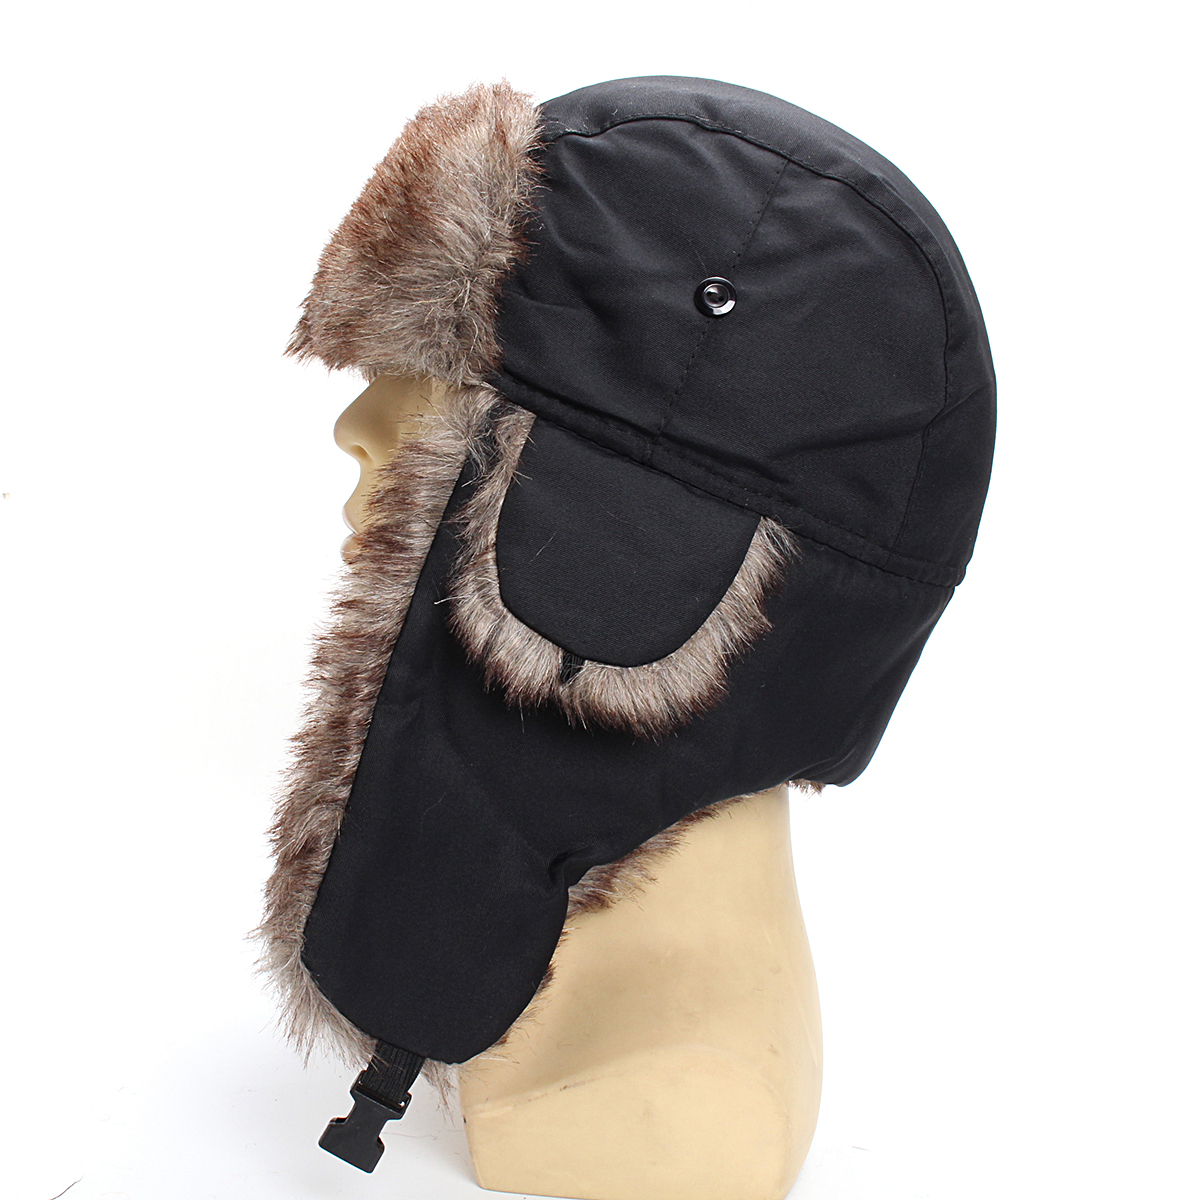 

Unisex Russian Faux Fur Pilot Trapper Cap Outdoor Ski Ear Protective Hat